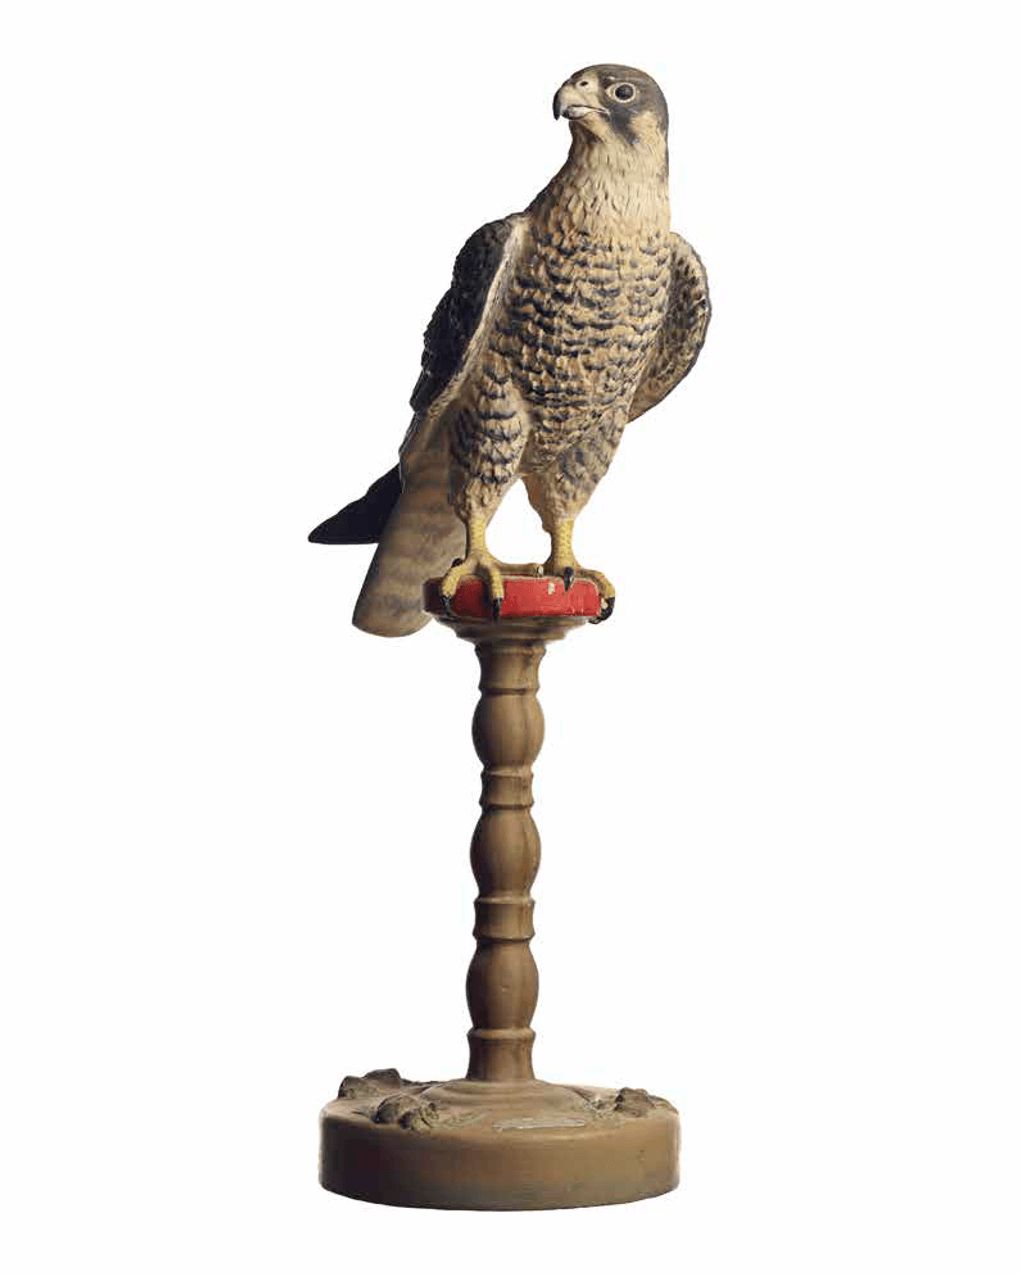 Гипсовая скульптура сокола. XX век. Фотография предоставлена Музеем шейха Фейсала, Катар